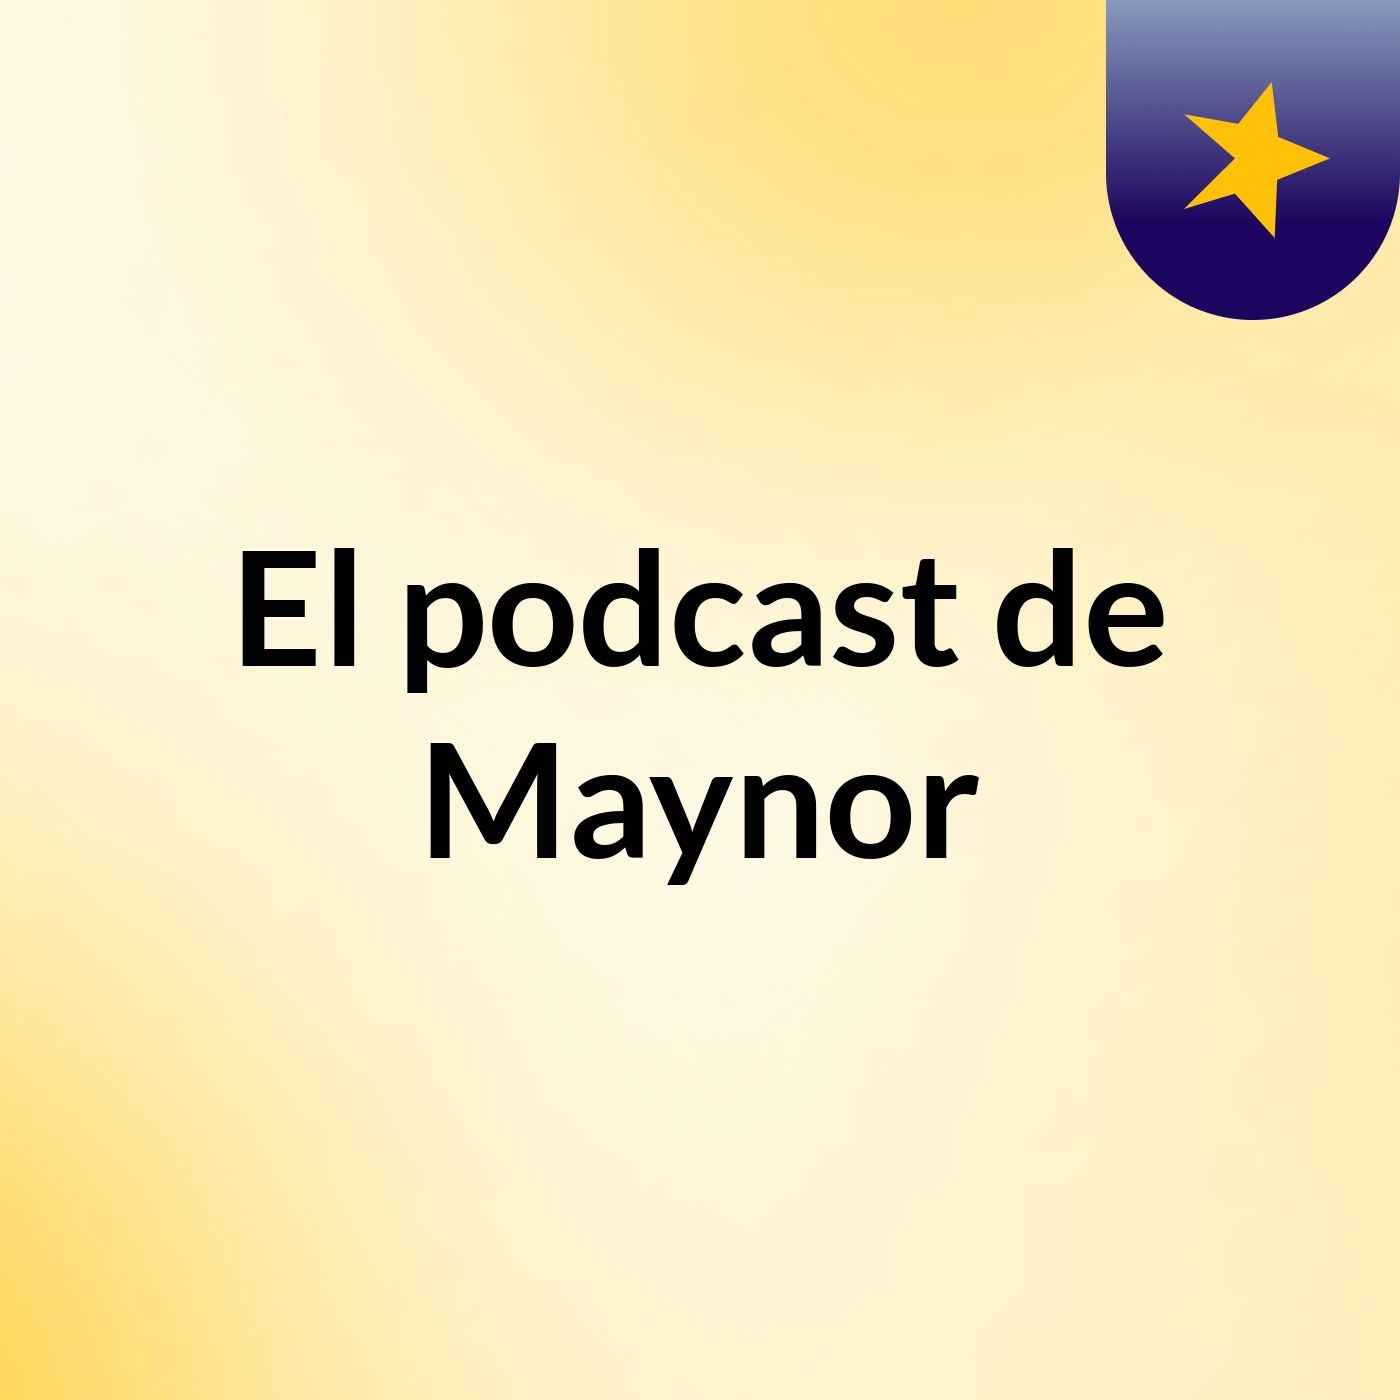 El podcast de Maynor